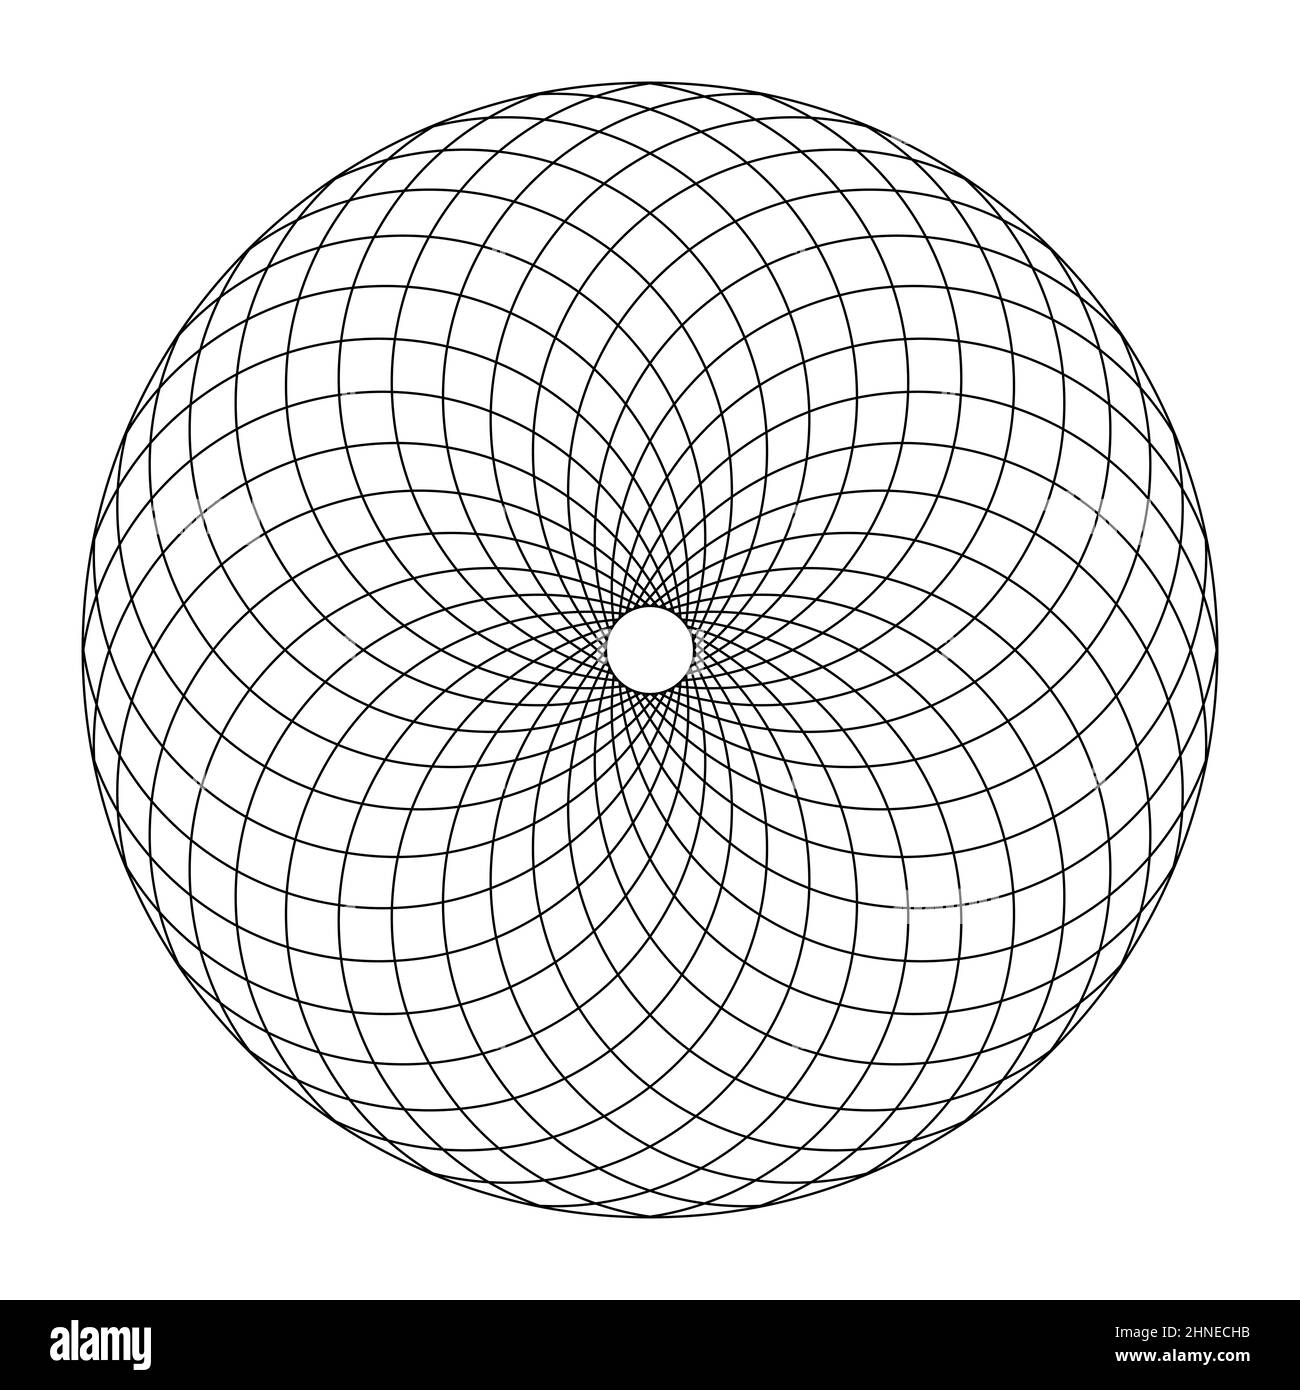 Kreisförmiges Fibonacci-Muster, entsprechend der Struktur eines Pinienkegels. Kreisförmige Fläche, die durch spiralförmige, angeordnete Linien gebildet wird und trapezförmige Muster erzeugt. Stockfoto